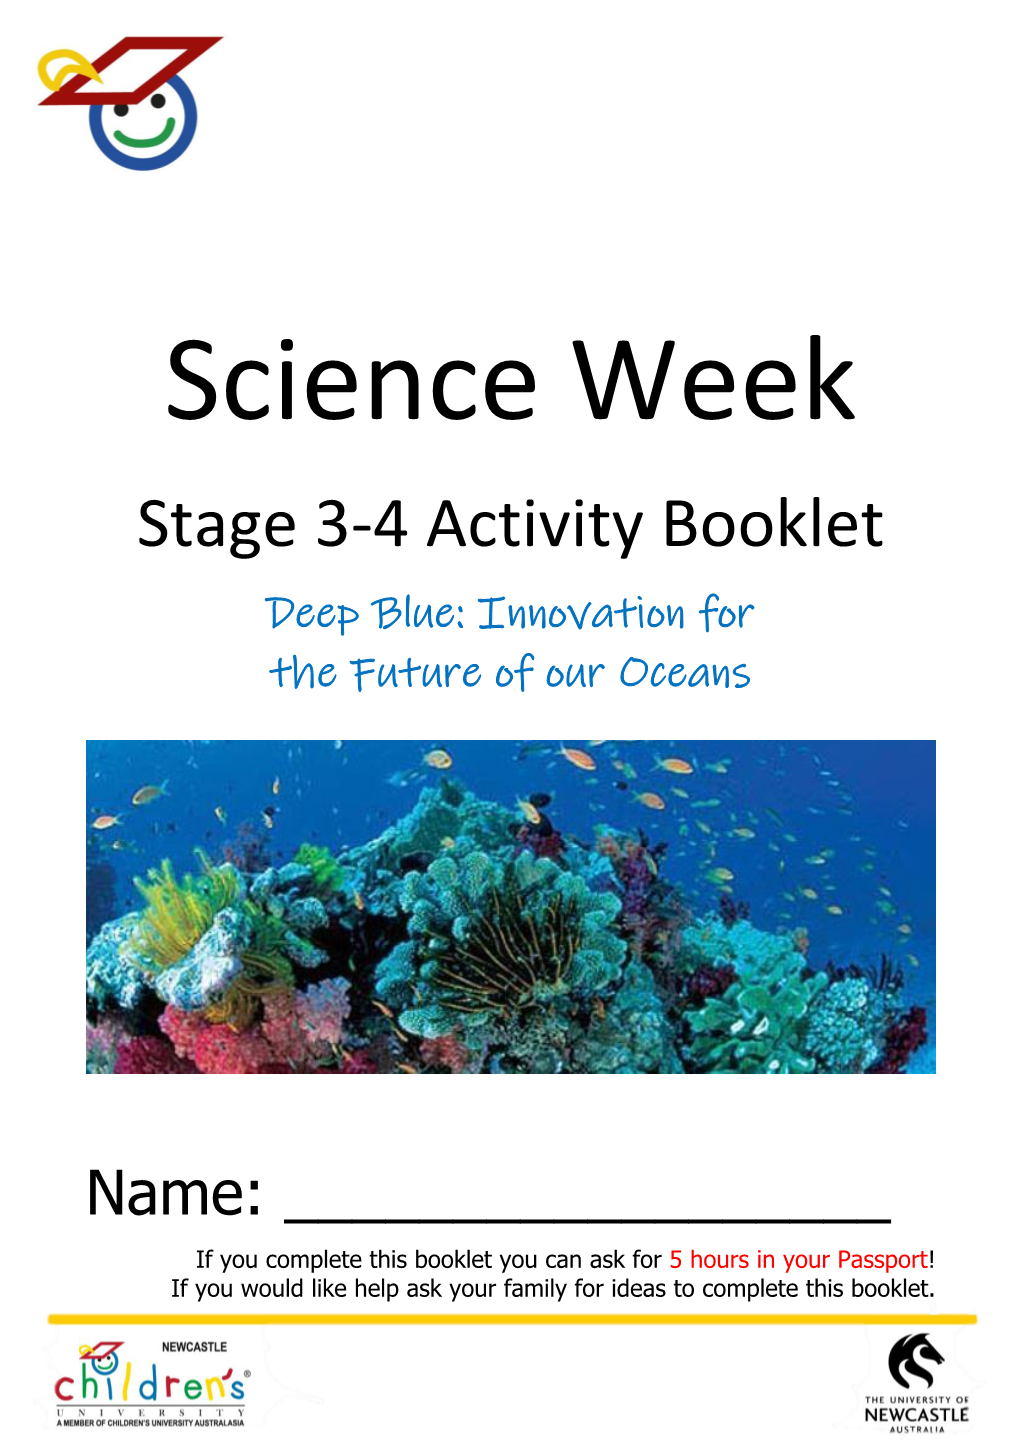 Science Week Booklet Stage